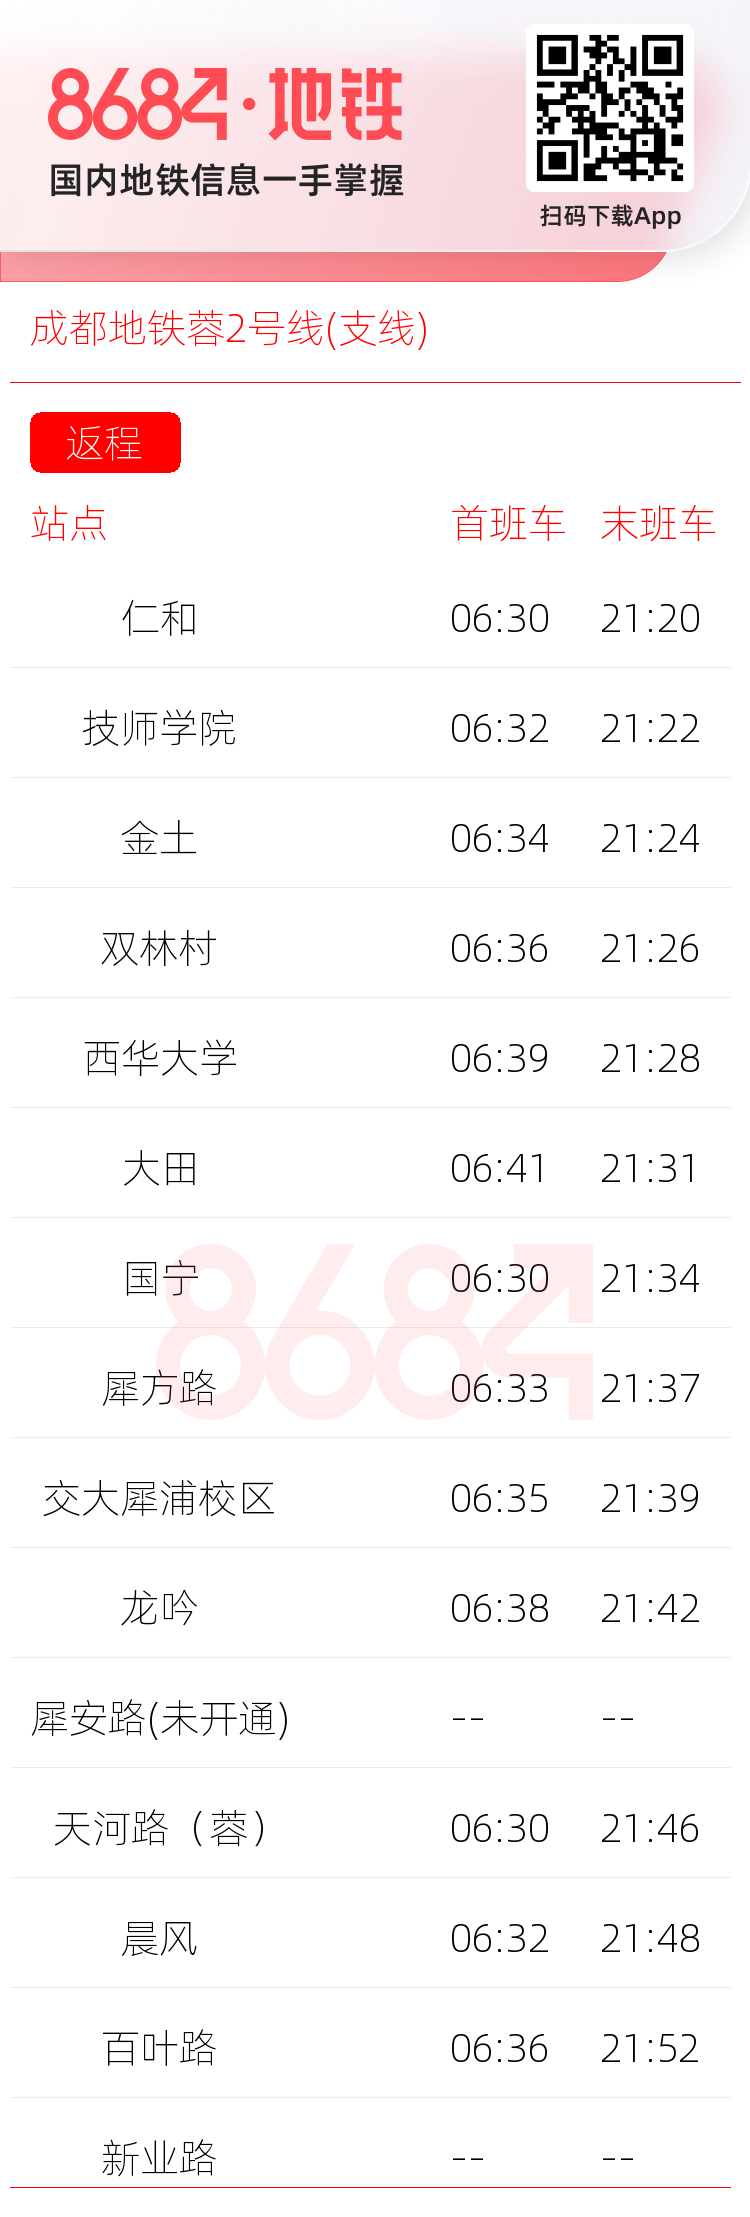 成都地铁蓉2号线(支线)运营时间表